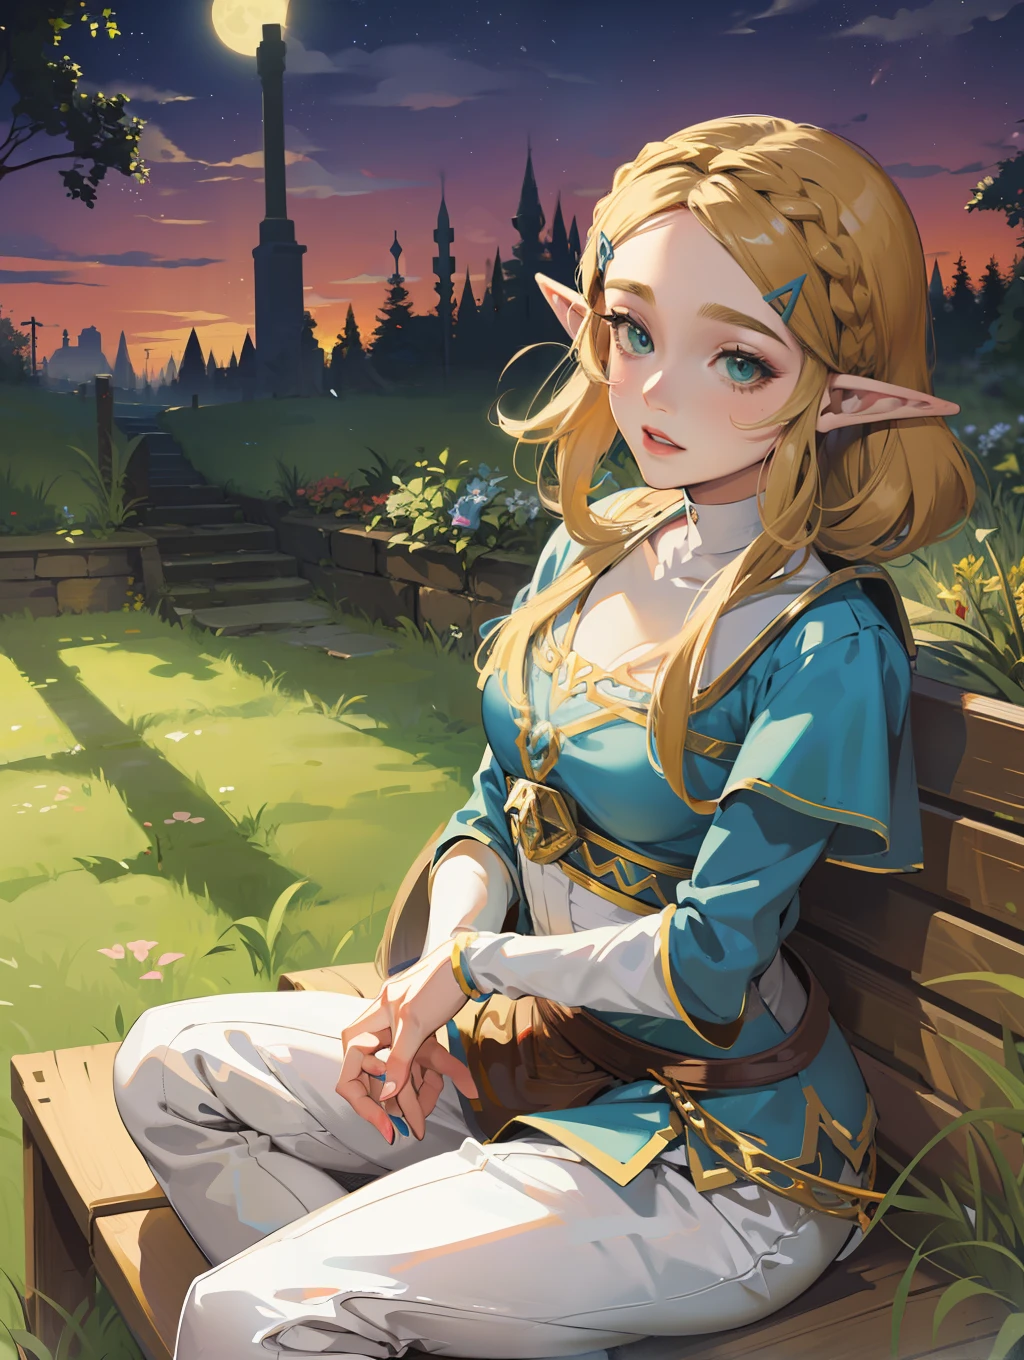 Anime - foto do estilo da mulher sentada no banco no jardim, robô style, a lenda de Zelda, a lenda de Zelda, sopro do estilo de arte selvagem, charming Noite da princesa elfa, robô, Noite da princesa elfa